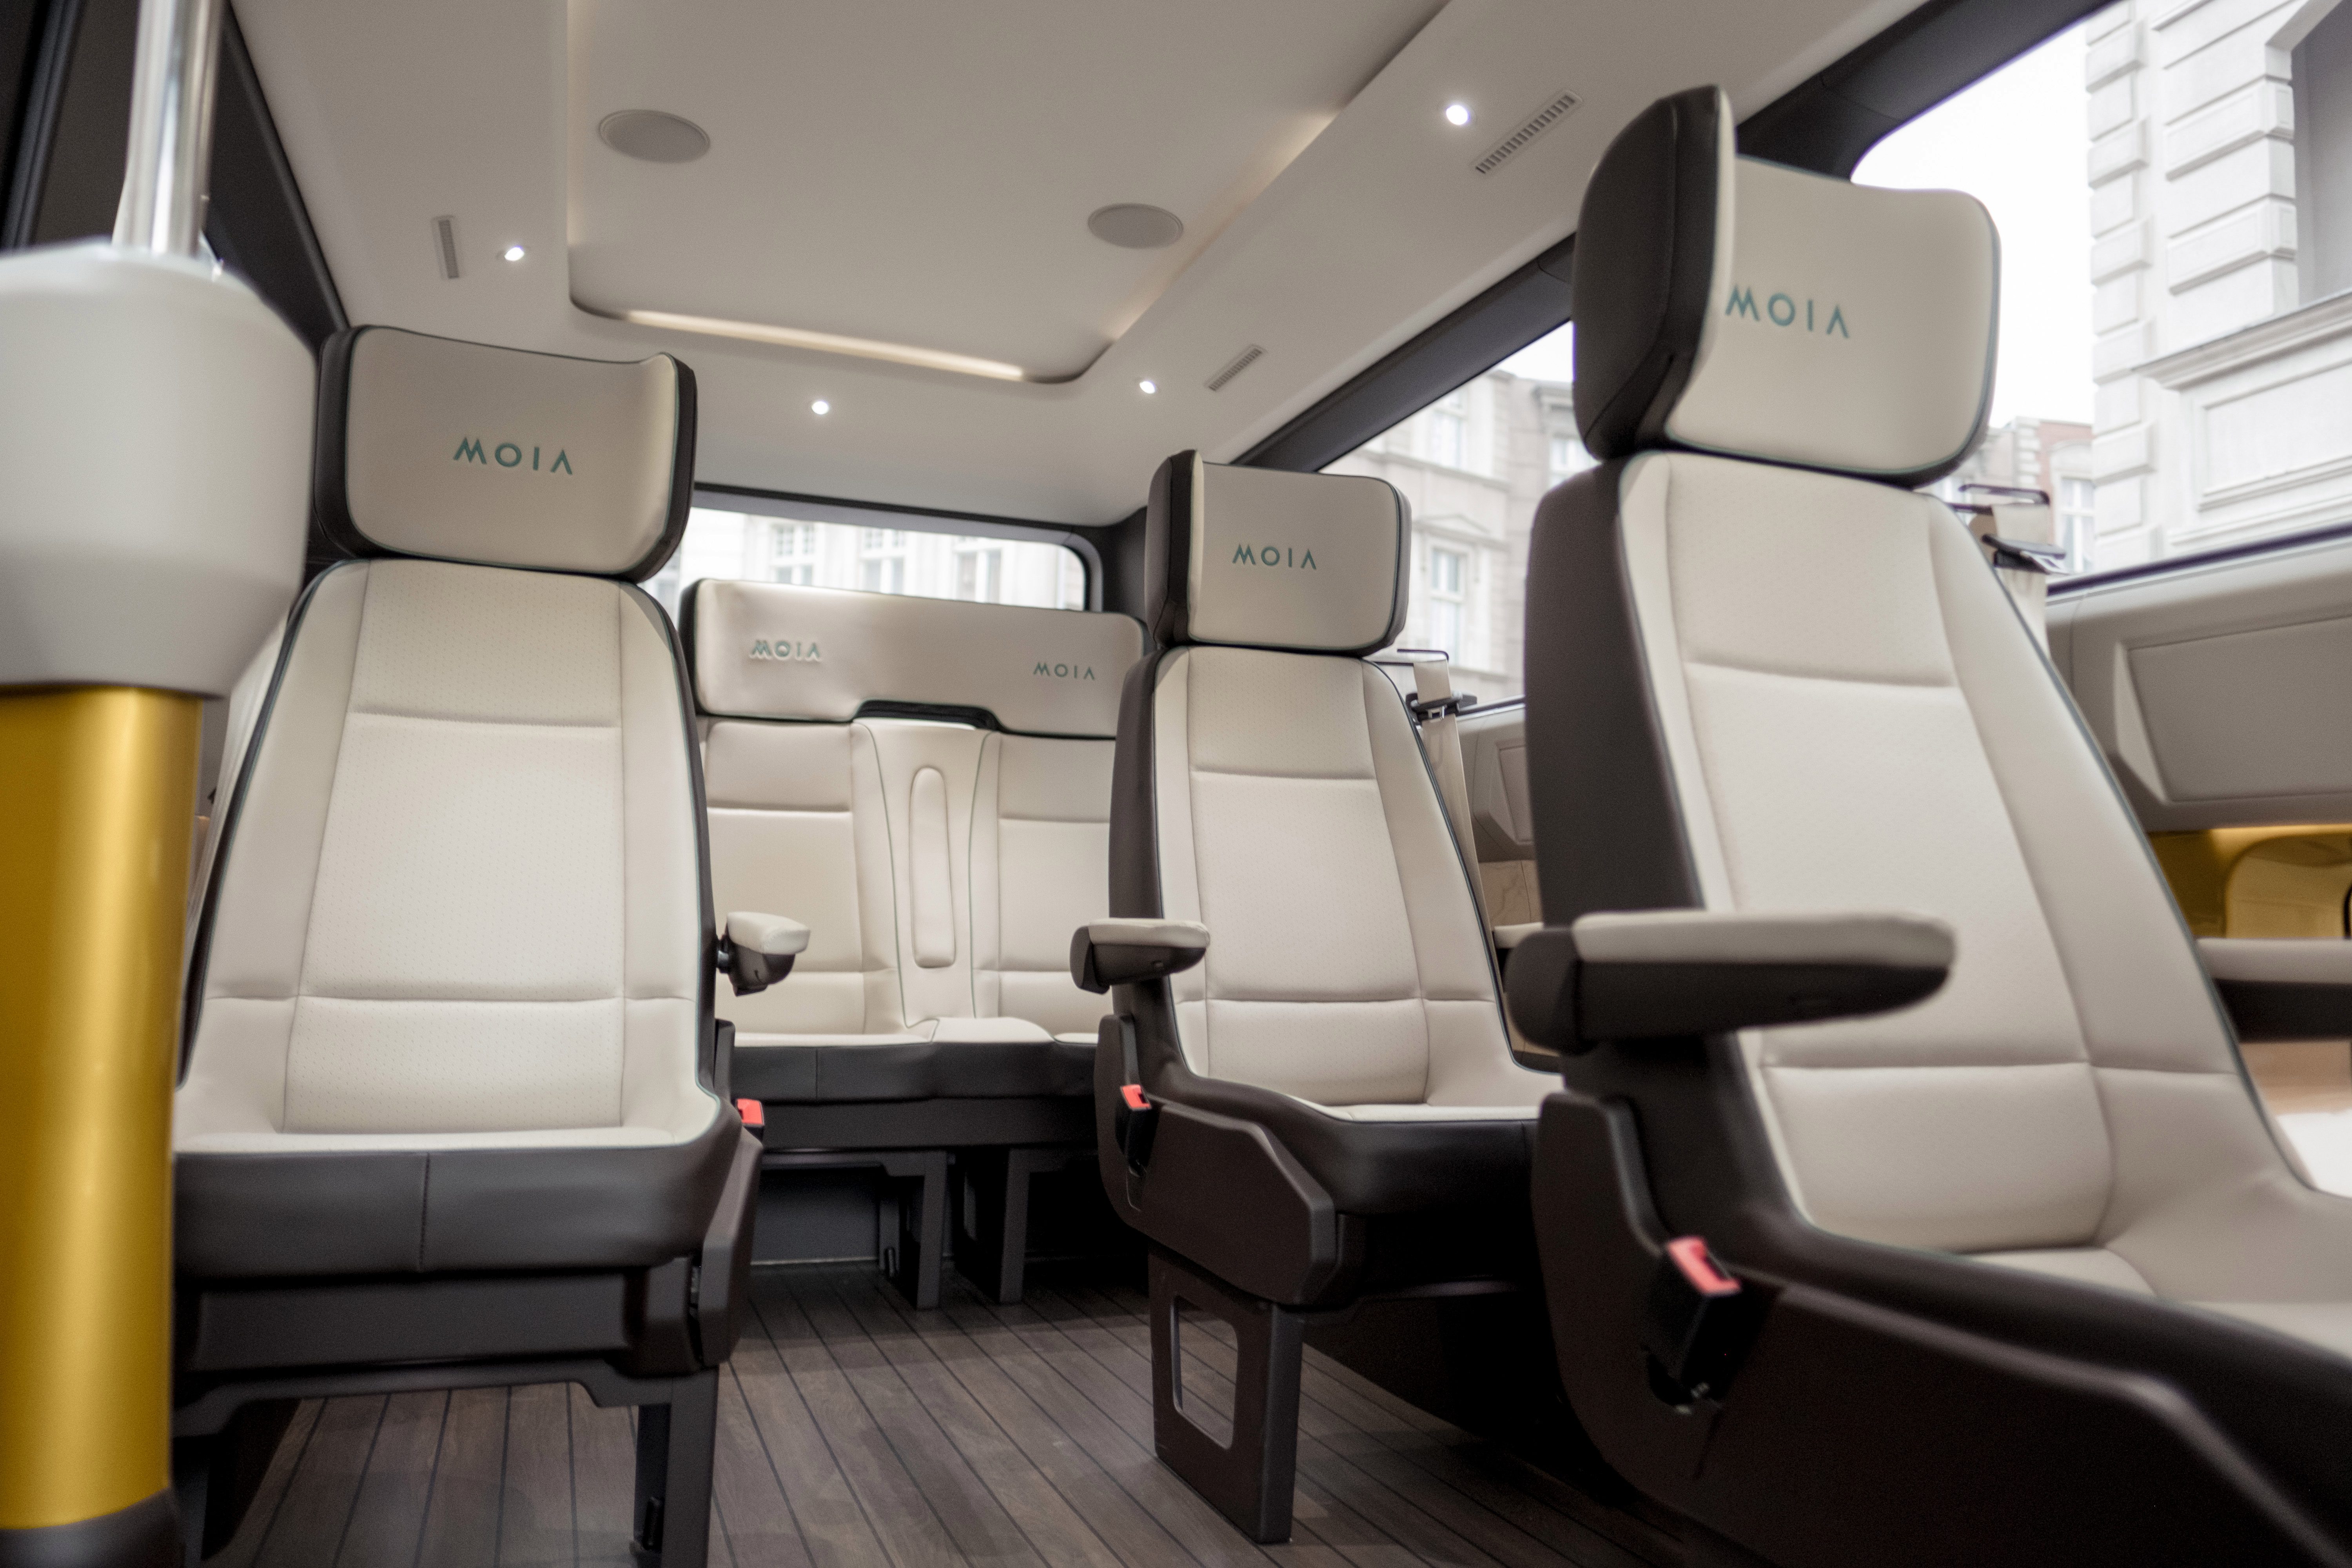 Cada asiento está equipado con luces de lectura regulables, puertos USB e incluye WiFi.